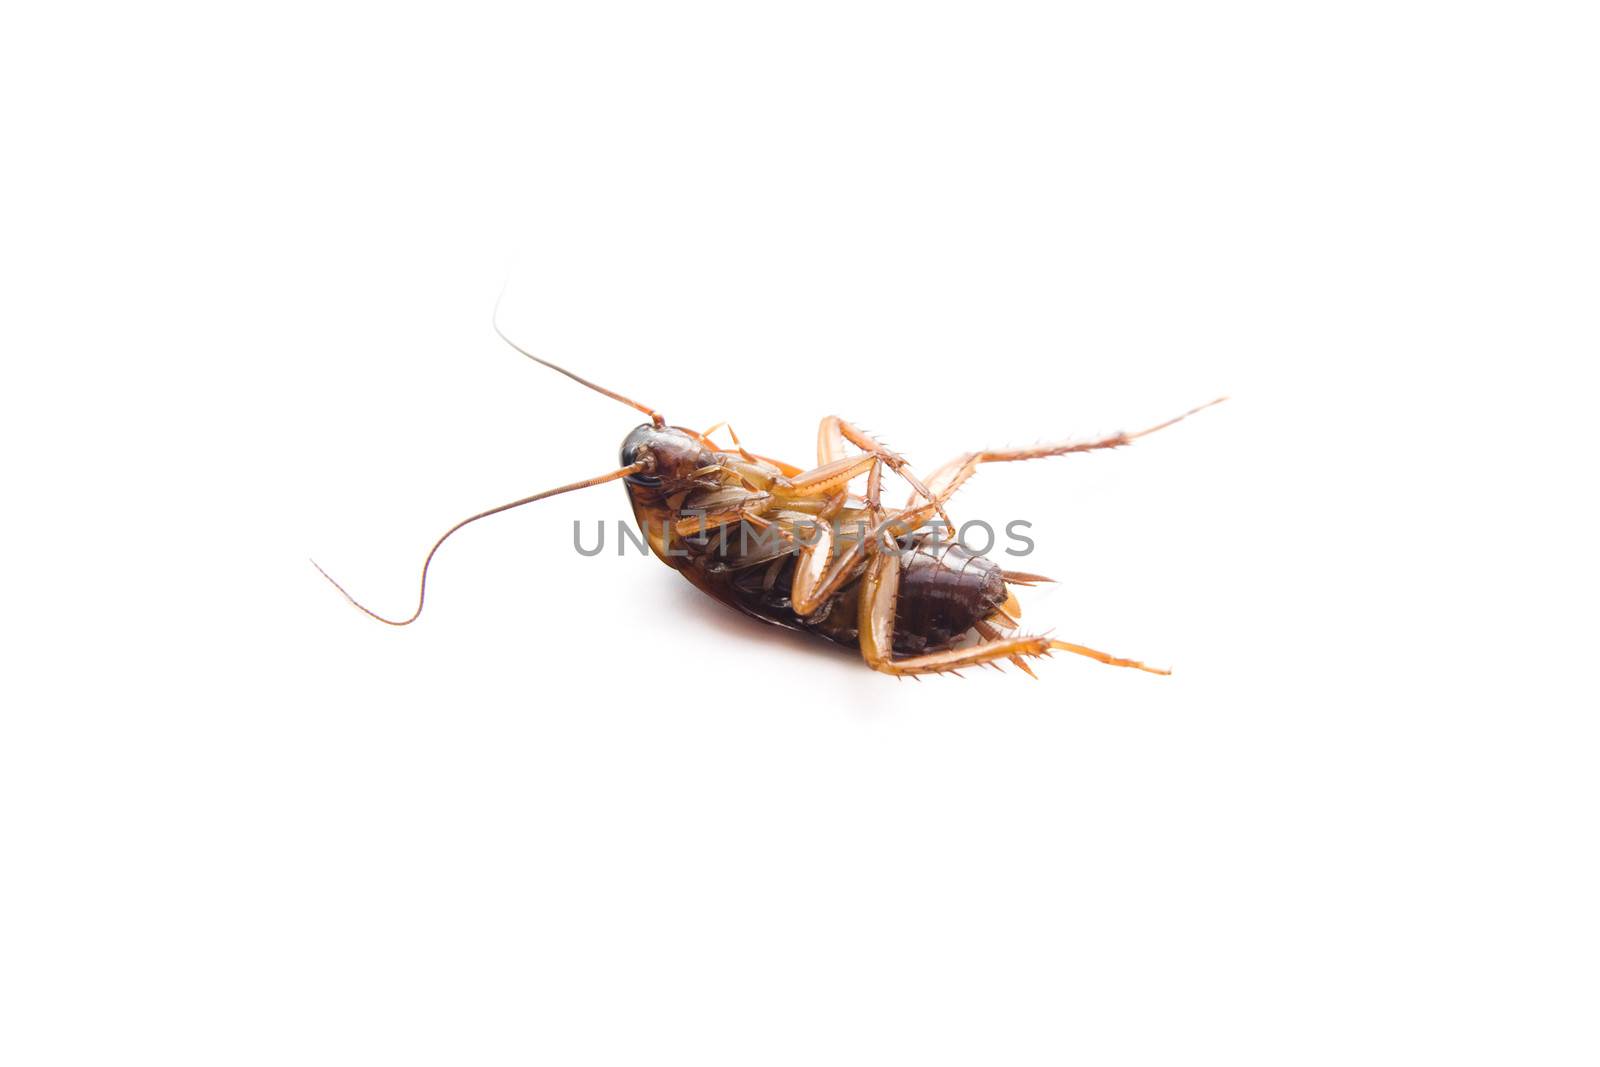 Dangerous Brown Cockroach by KEVMA21